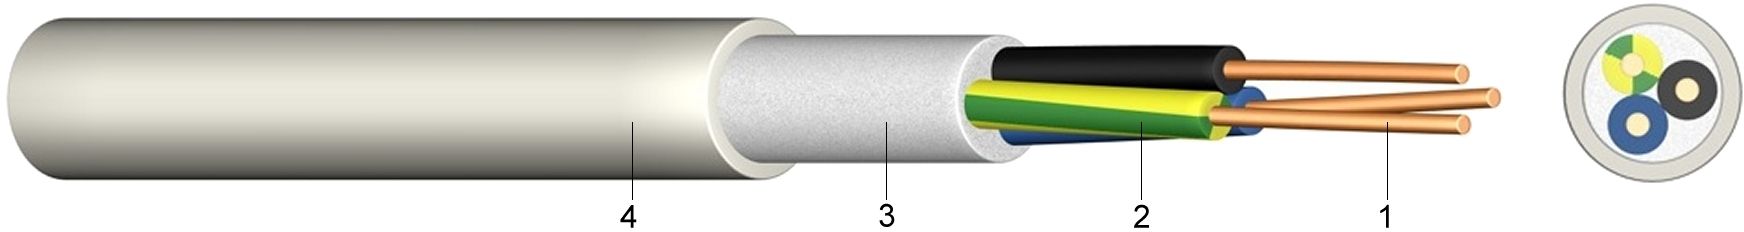 NHXMH 3x1.5mm² Kabel